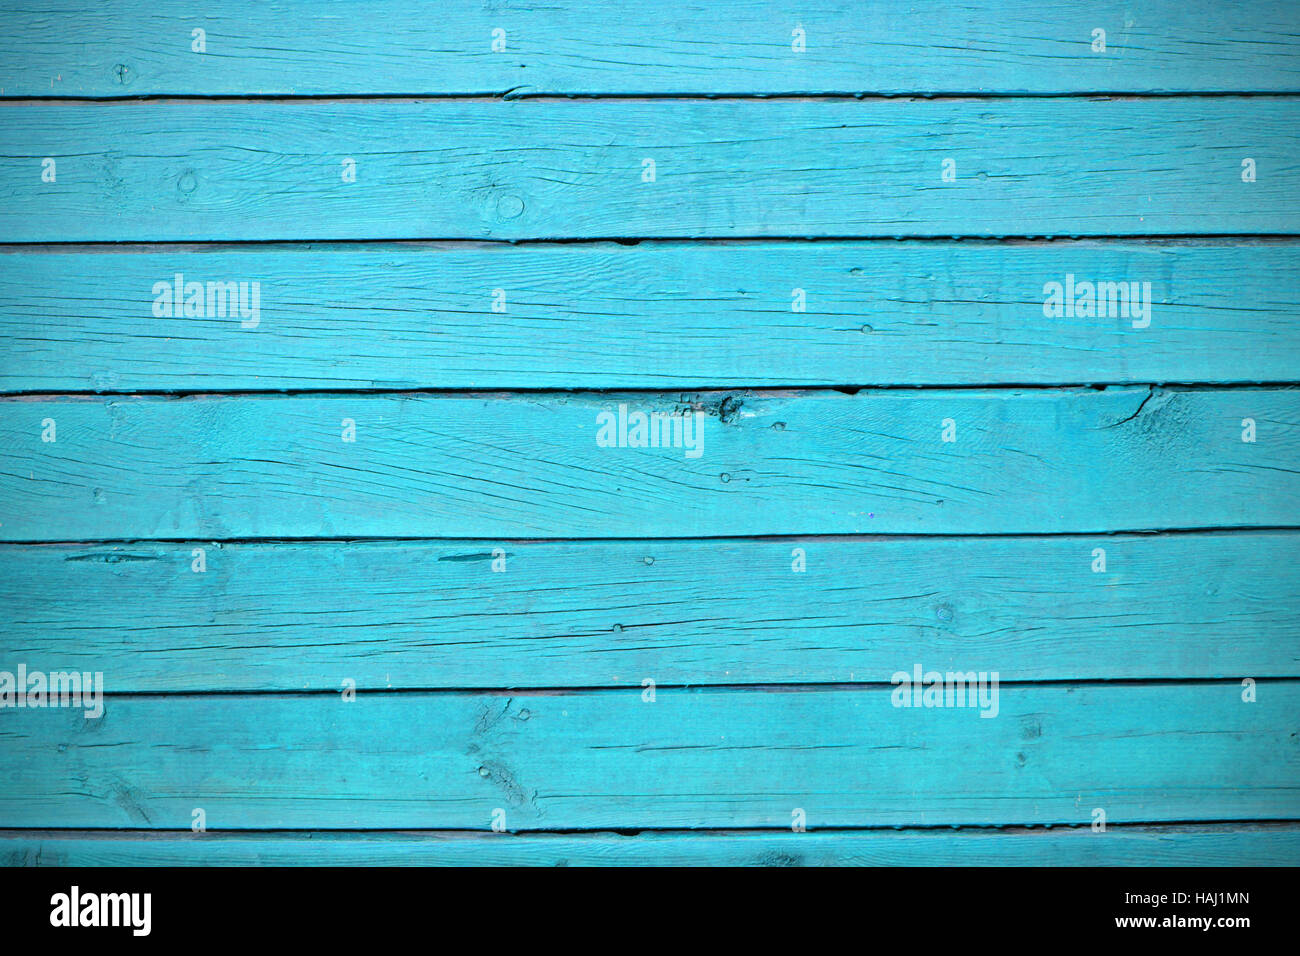 La texture des planches en bois bleu Banque D'Images